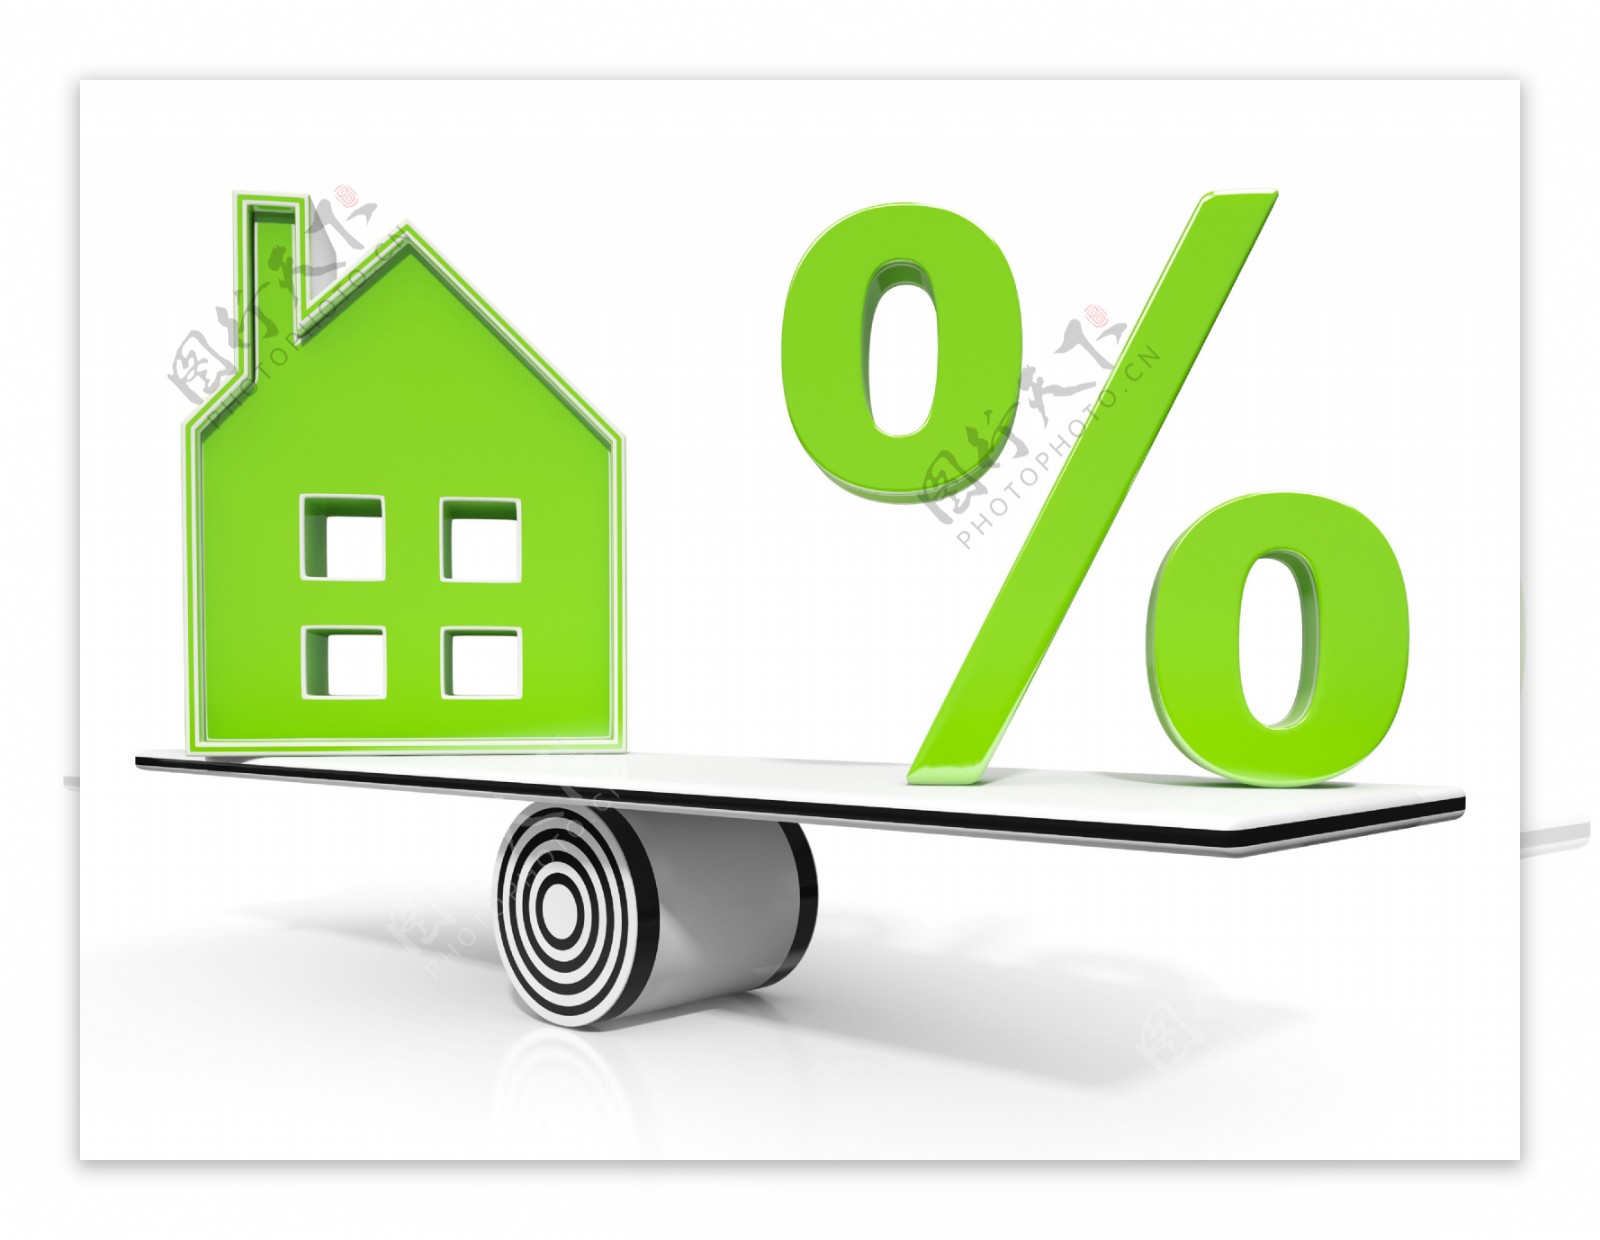 房子和百分比符号意义的投资或折扣